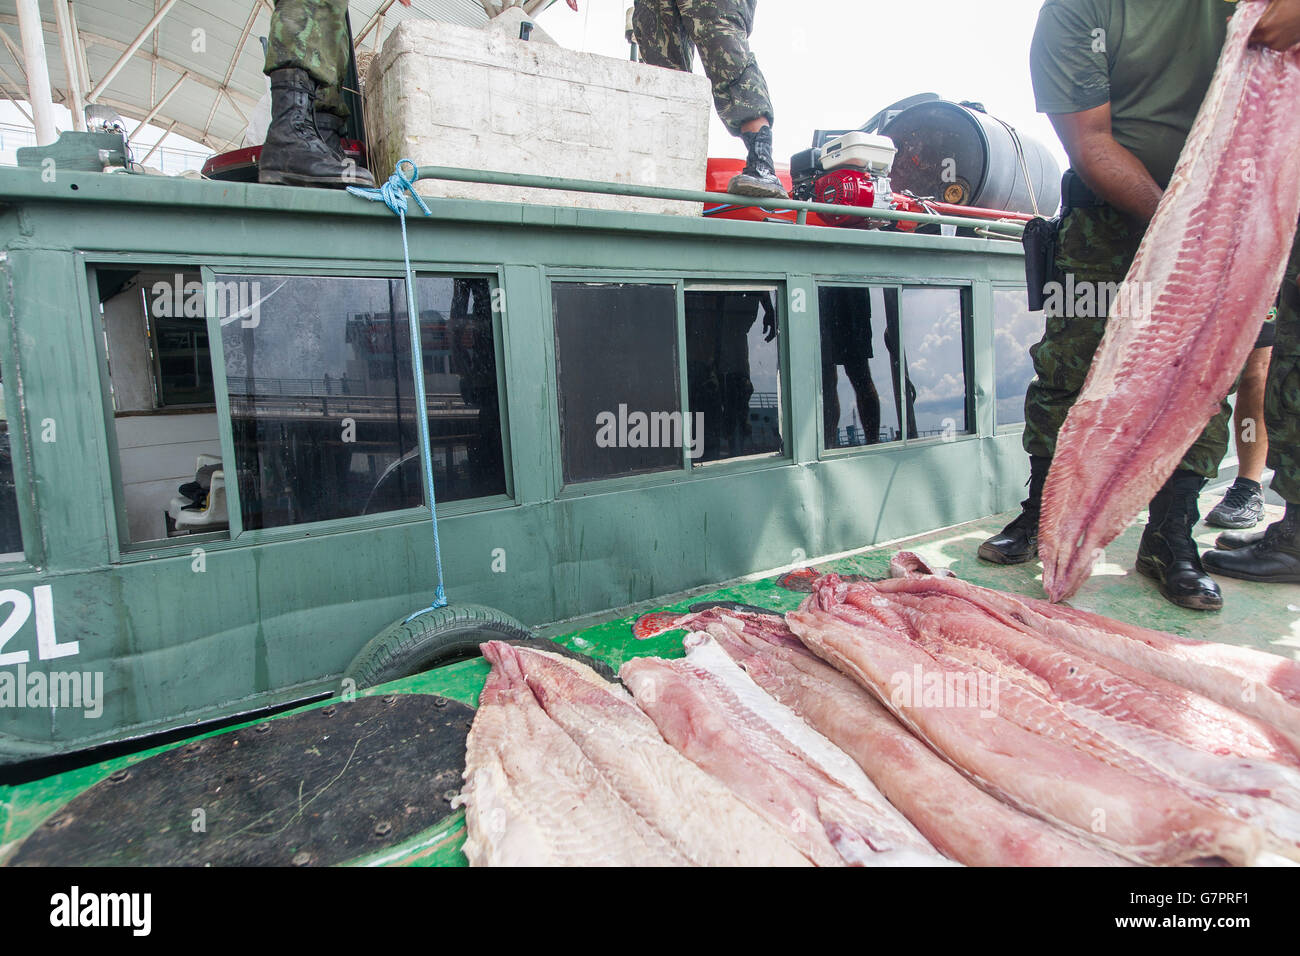 Beschlagnahme der illegalen Fischerei von Amazonas Umwelt Staatspolizei in Manaus Stadt, Nord-Brasilien - Pirarucu Fischfilet Streifen - der Pirarucu, auch bekannt als Arapaima oder Paiche (Arapaima Gigas) ist eine südamerikanische Tropische Süßwasserfische, es ist ein lebendes Fossil und eines der größten Süßwasserfische der Welt. Stockfoto